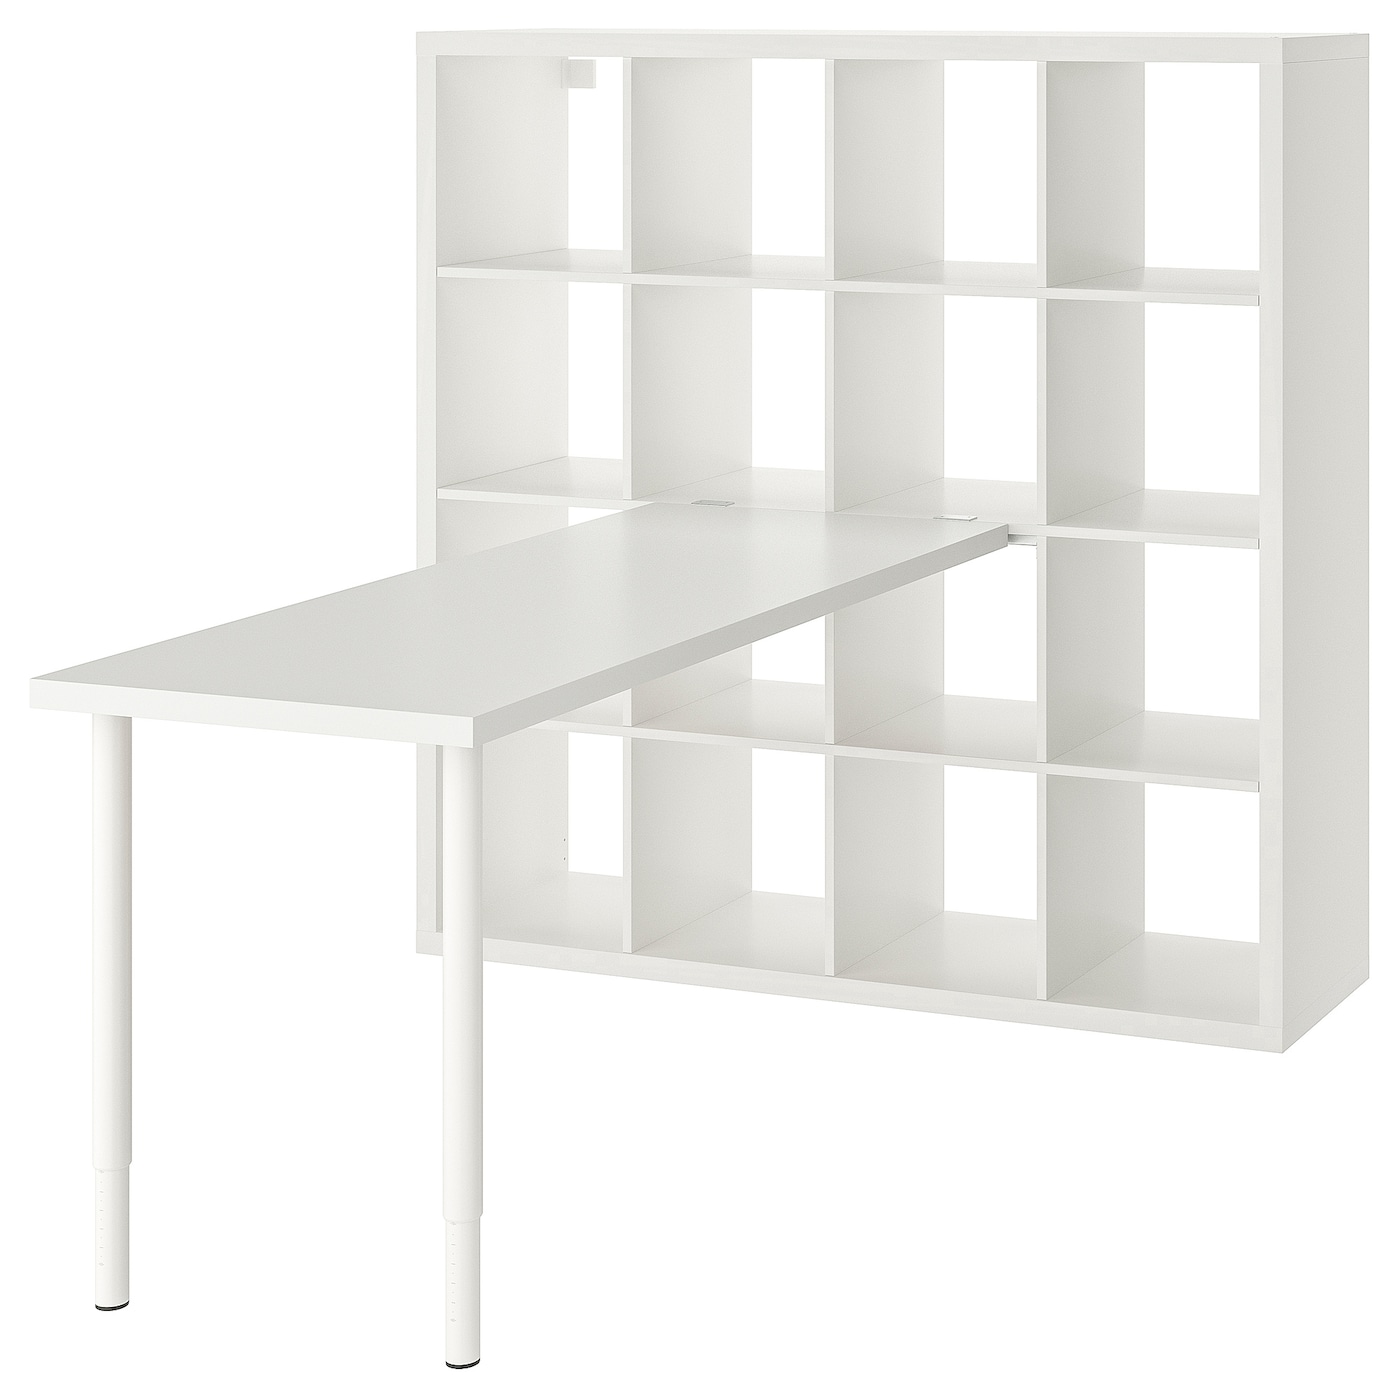 Письменный стол с книжной полкой 16 ячеек - IKEA LAGKAPTEN/KALLAX/ ЛАГКАПТЕН/КАЛЛАКС ИКЕА, белый